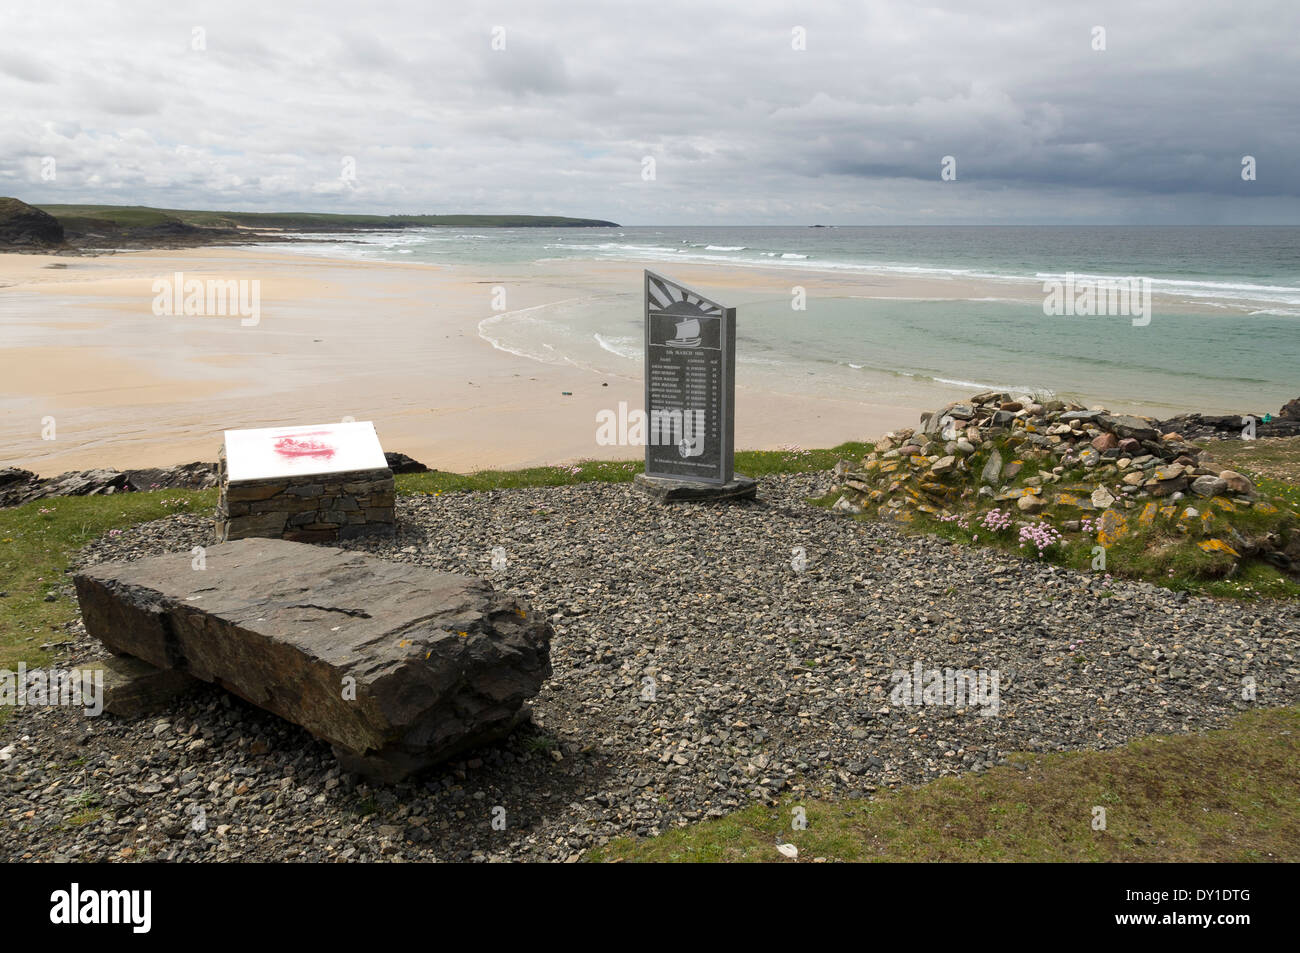 Denkmal für die Cunndal ertrinken im März 1885, am Strand von Traigh Shanndaigh, in der Nähe von Eoropie, Lewis, Western Isles, Schottland, UK Stockfoto